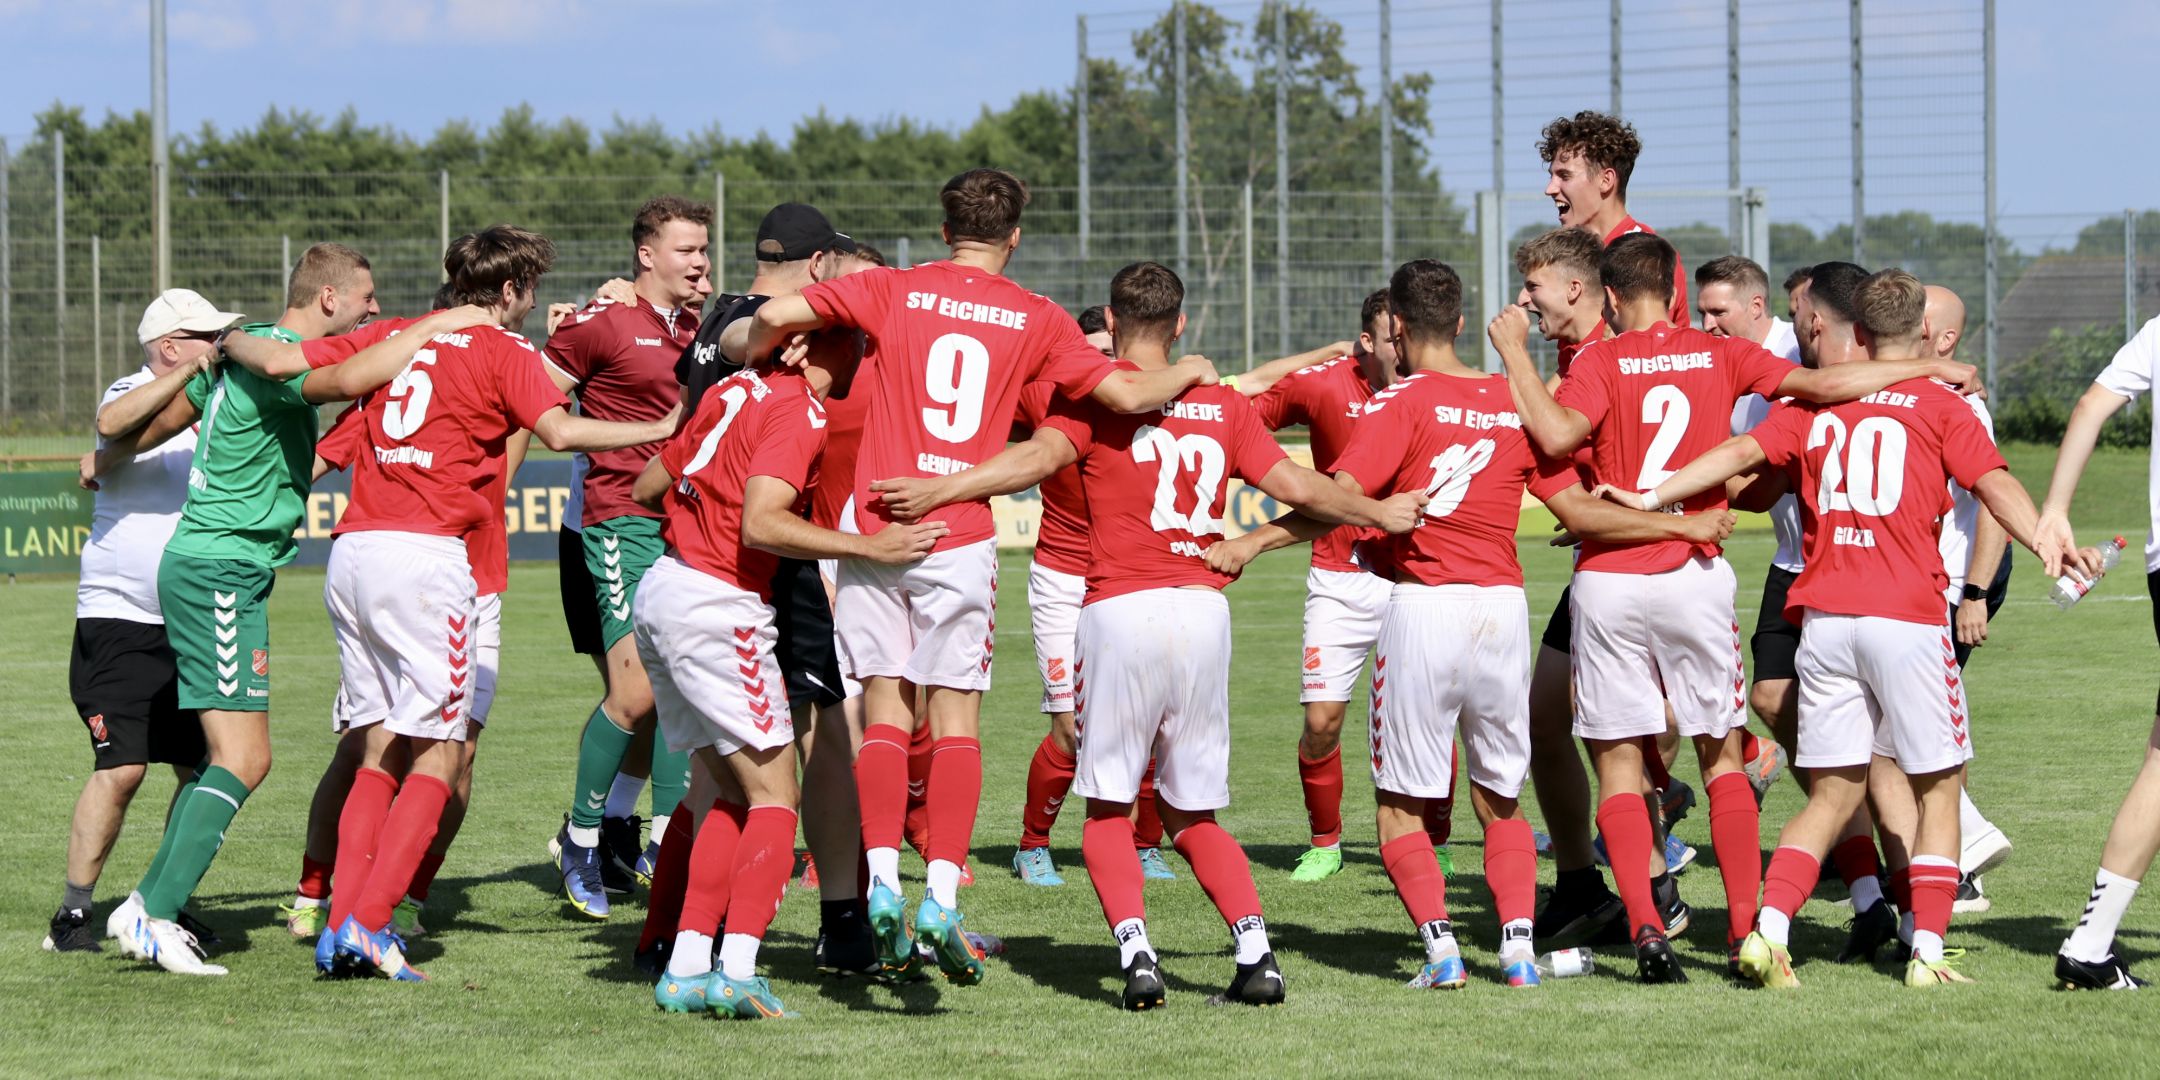 SV Eichede bleibt effizient - Liga gewinnt auch gegen Eckernförde mit 1:0